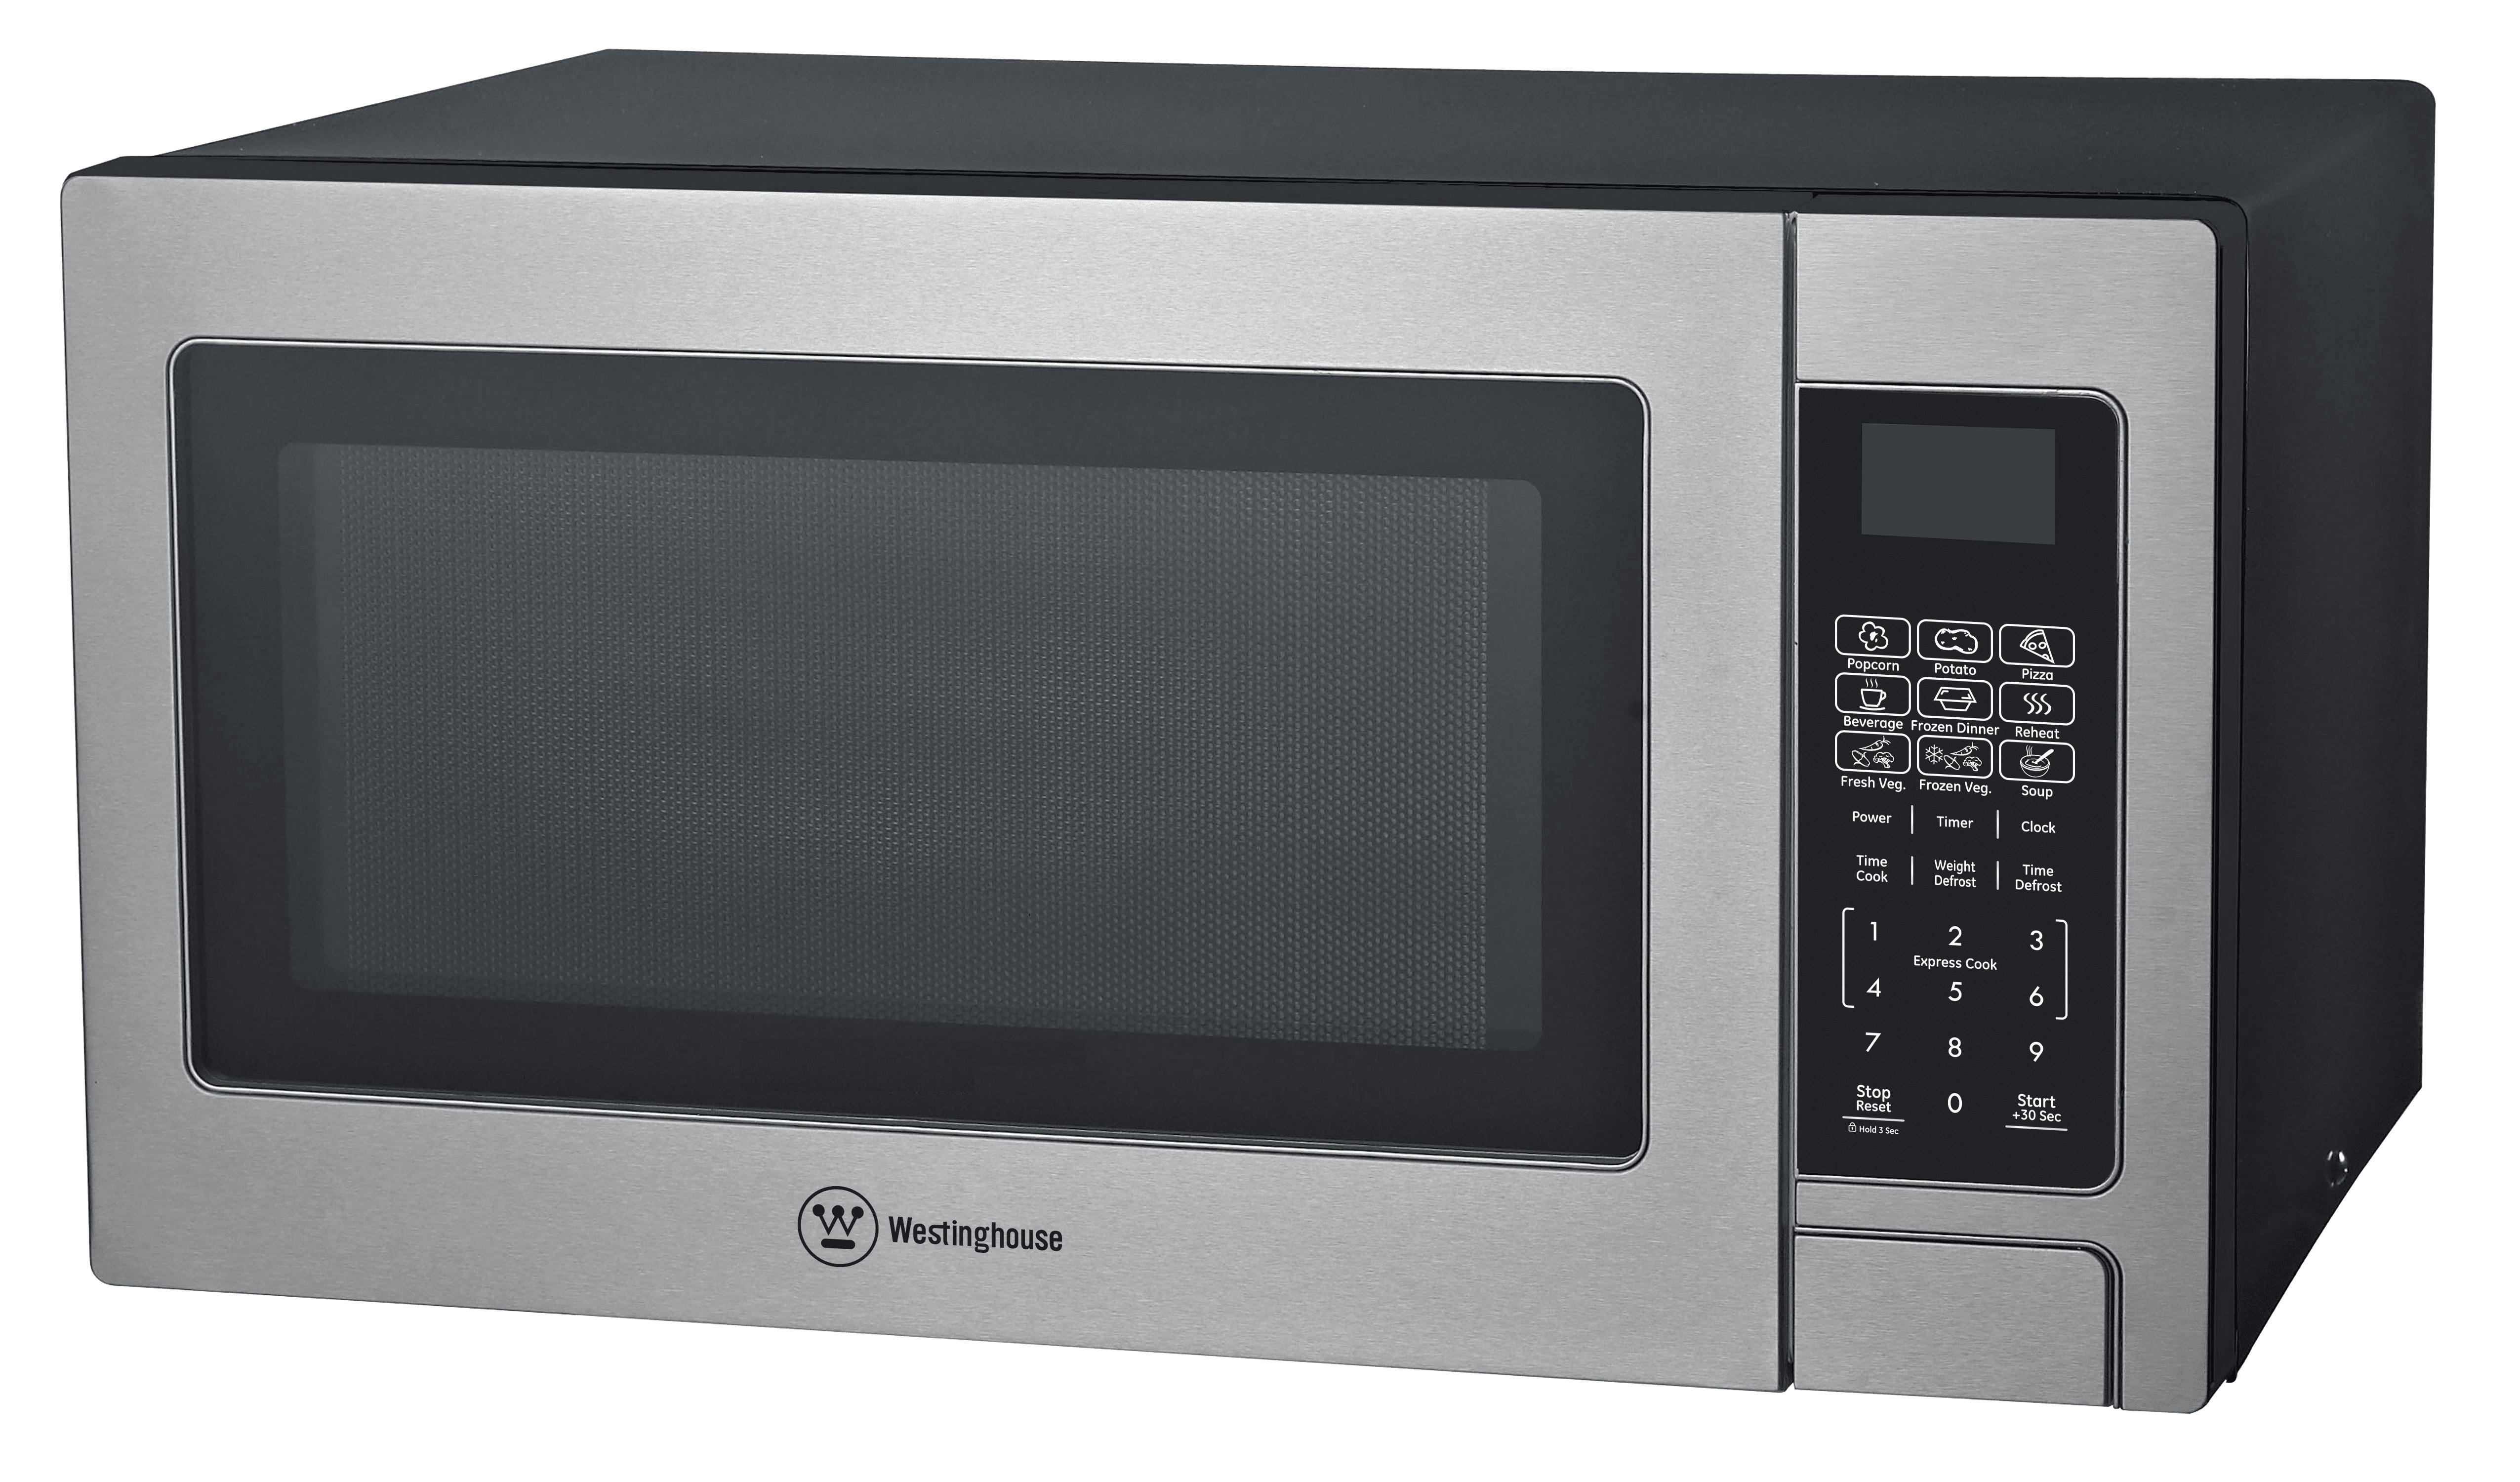 Countertop Microwave Oven 1.1 - Walmart.com - Walmart.com